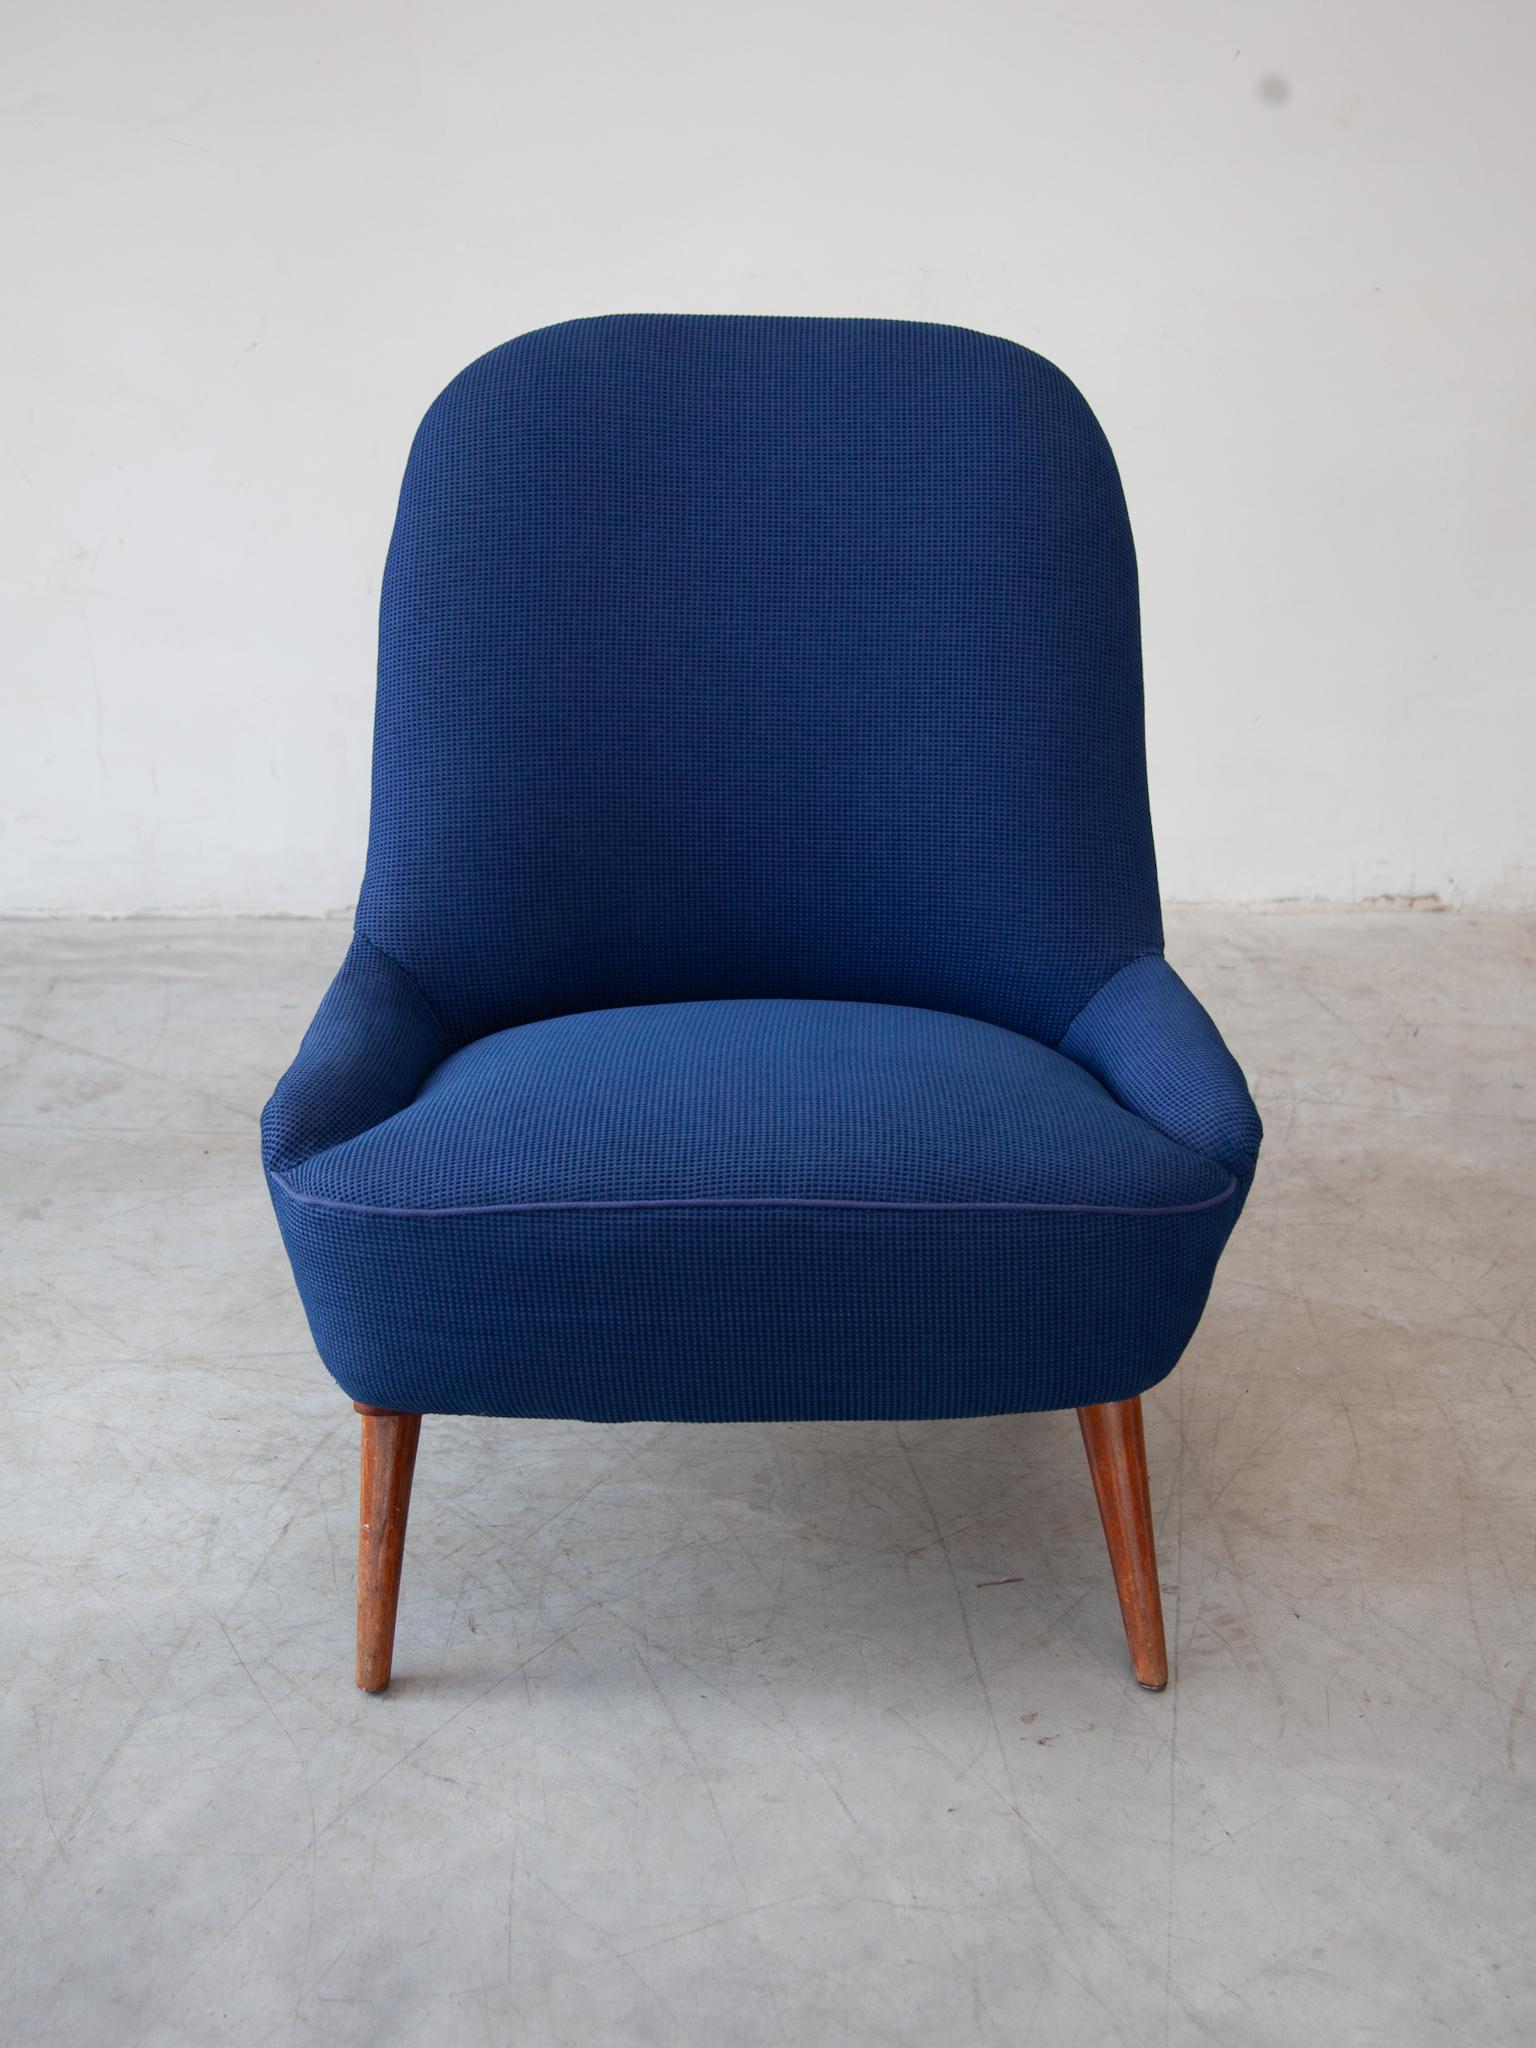 Scandinavian Modern Midcentury Modern 1950s Blue Fabric, Lounge Arm Chair, Scandinavian Design For Sale